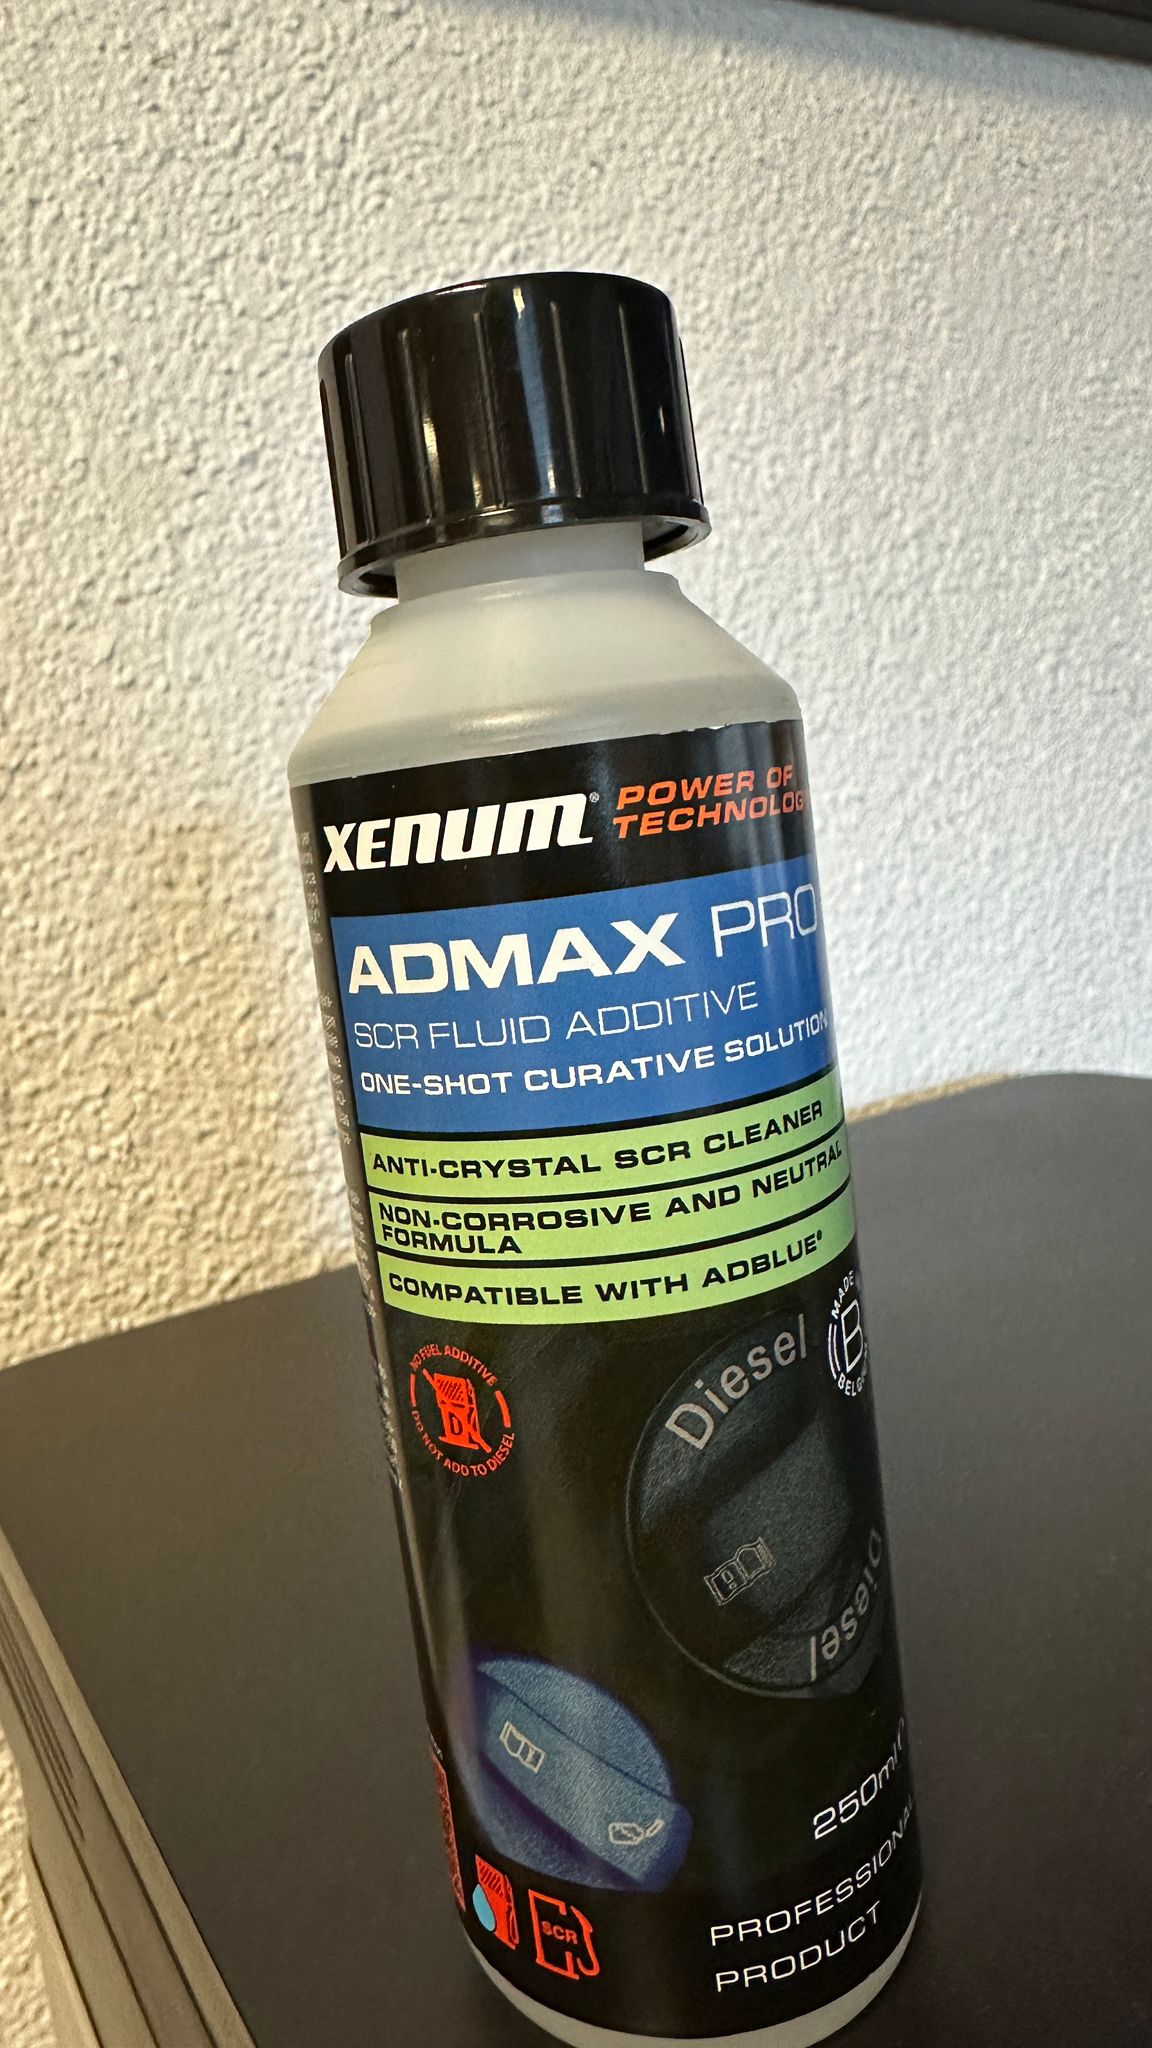 Produit Admax pro anti cristallisation pour soucis adblue